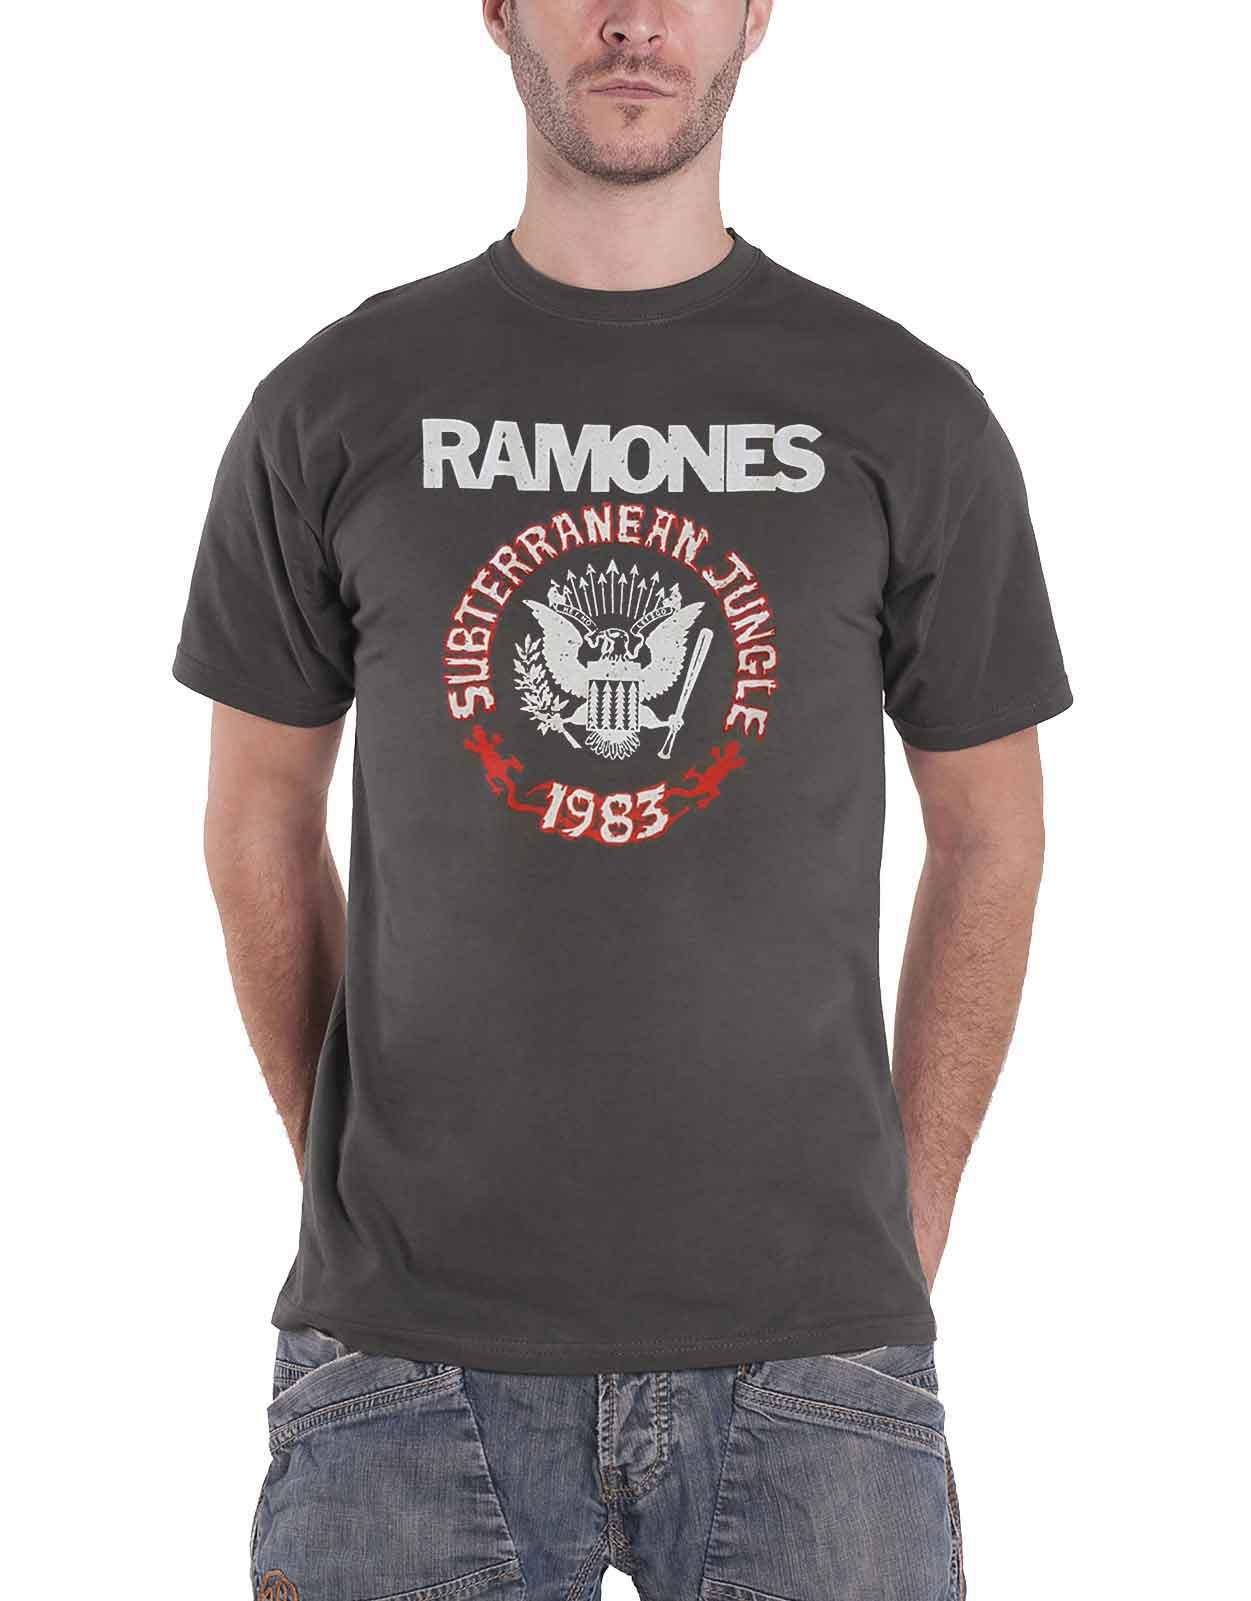 Футболка «Подземные джунгли» Ramones, серый темно фиолетовая мужская черная футболка с графическим рисунком футболка с фанатом рок группы размер s 3xl модная футболка топ футболка